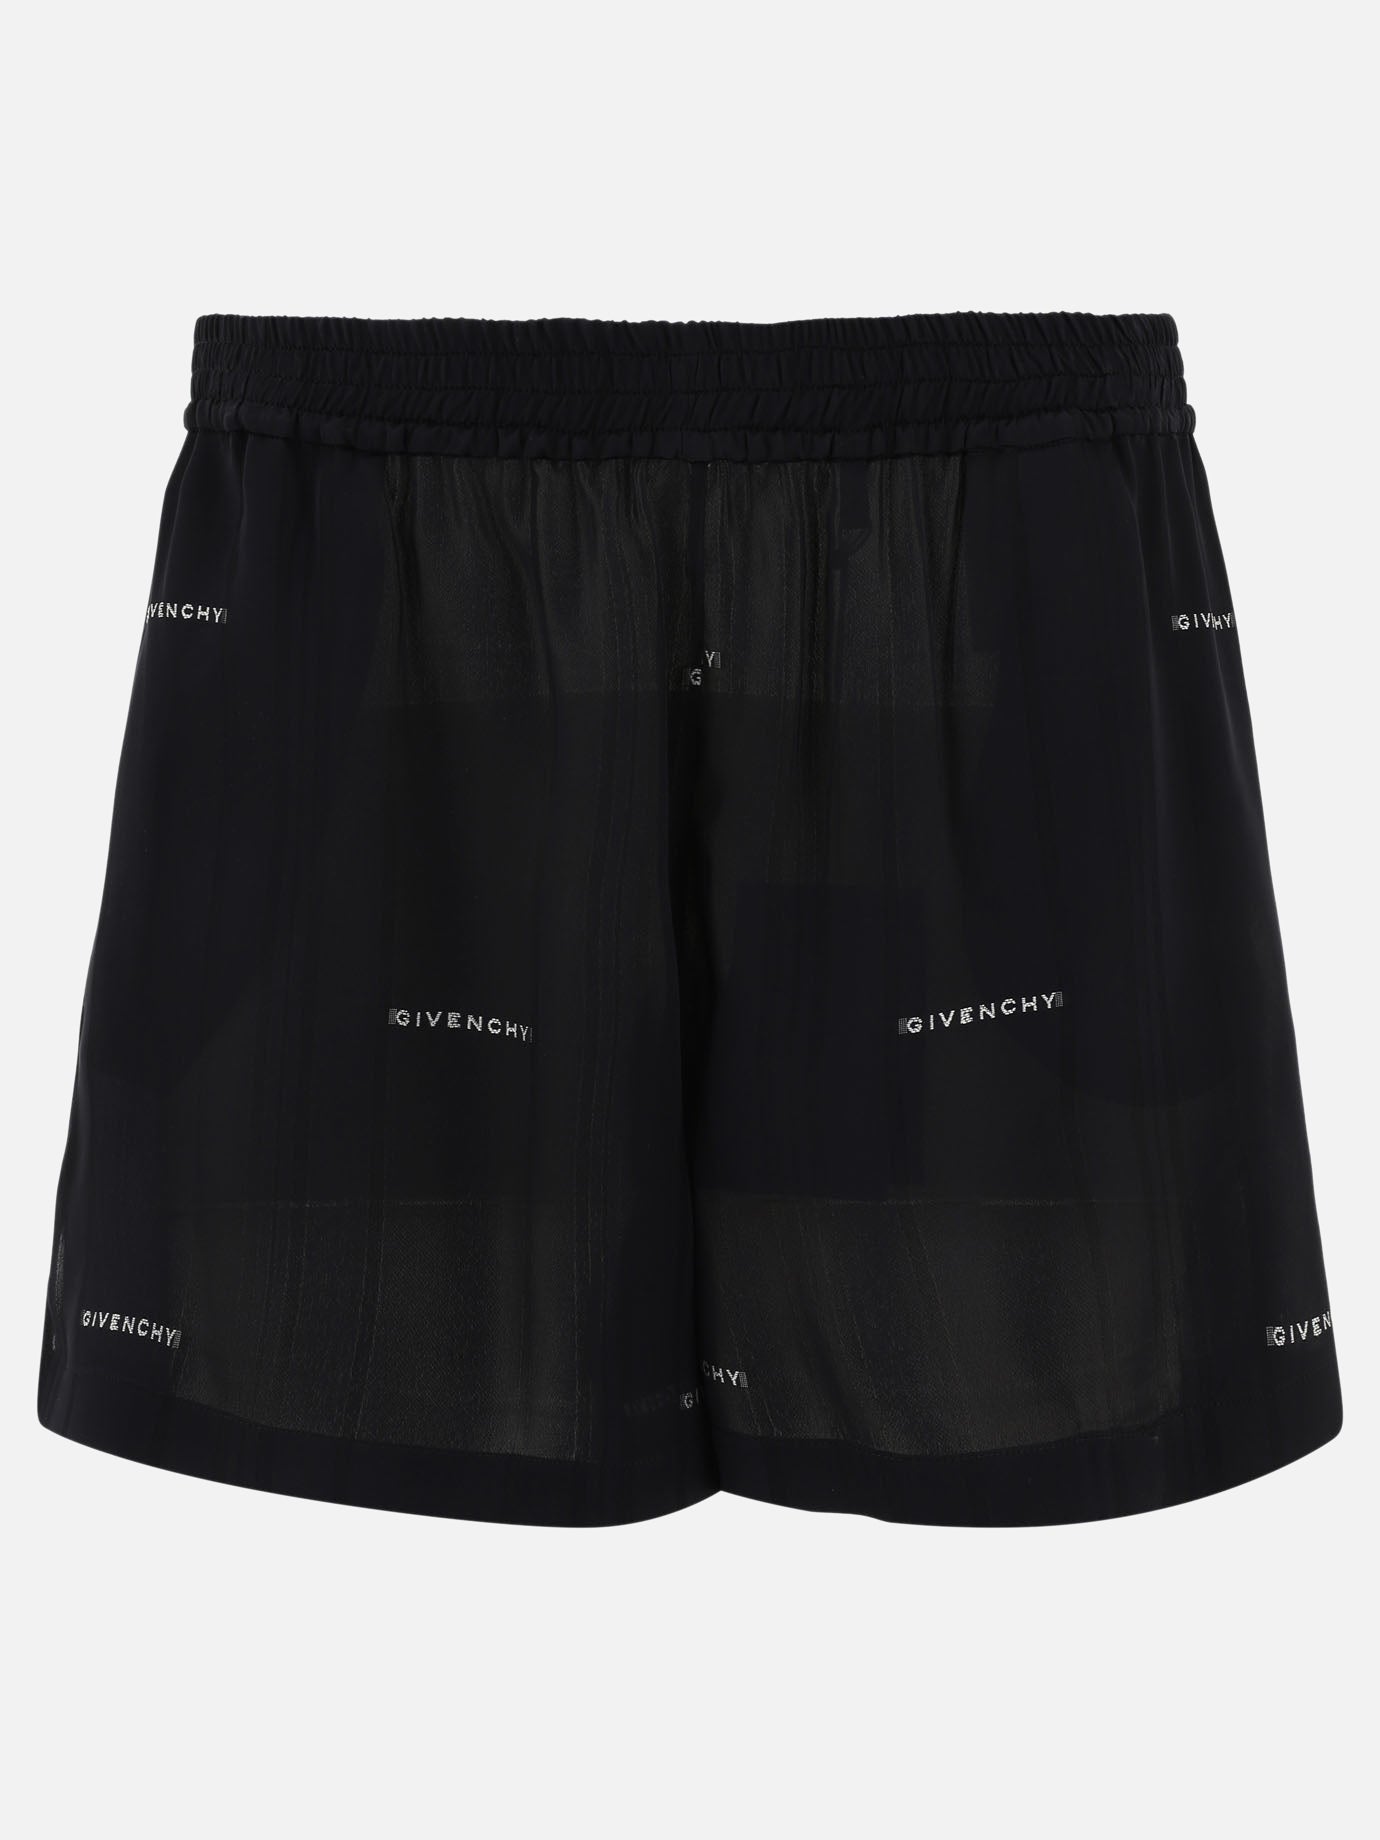 "Givenchy Jacquard" shorts